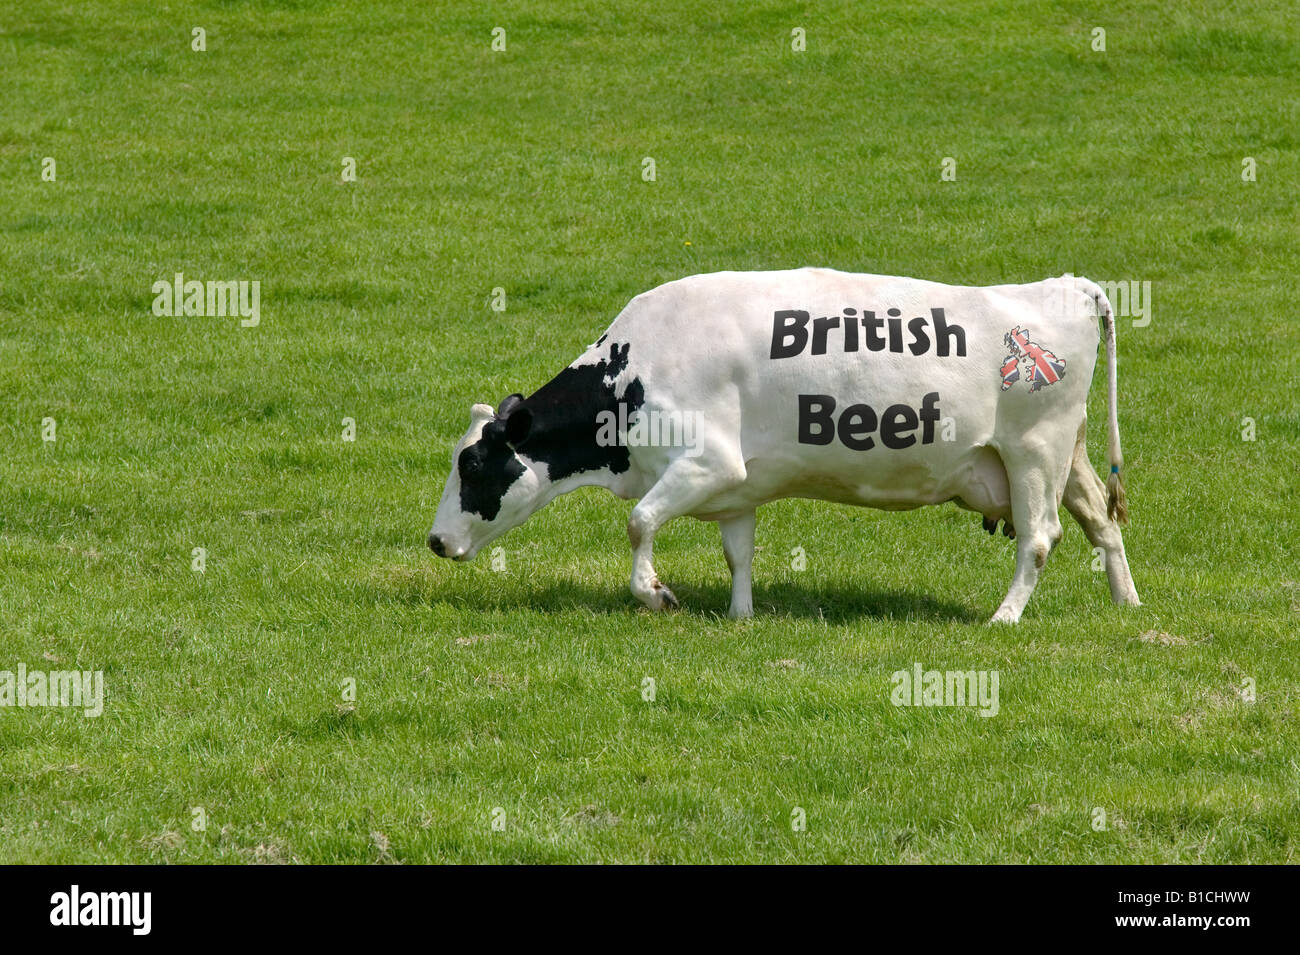 Konzept-Bild einer Kuh mit den Worten britisches Rindfleisch als seine Markierungen und ein Union Jack-Karte des Vereinigten Königreichs Stockfoto